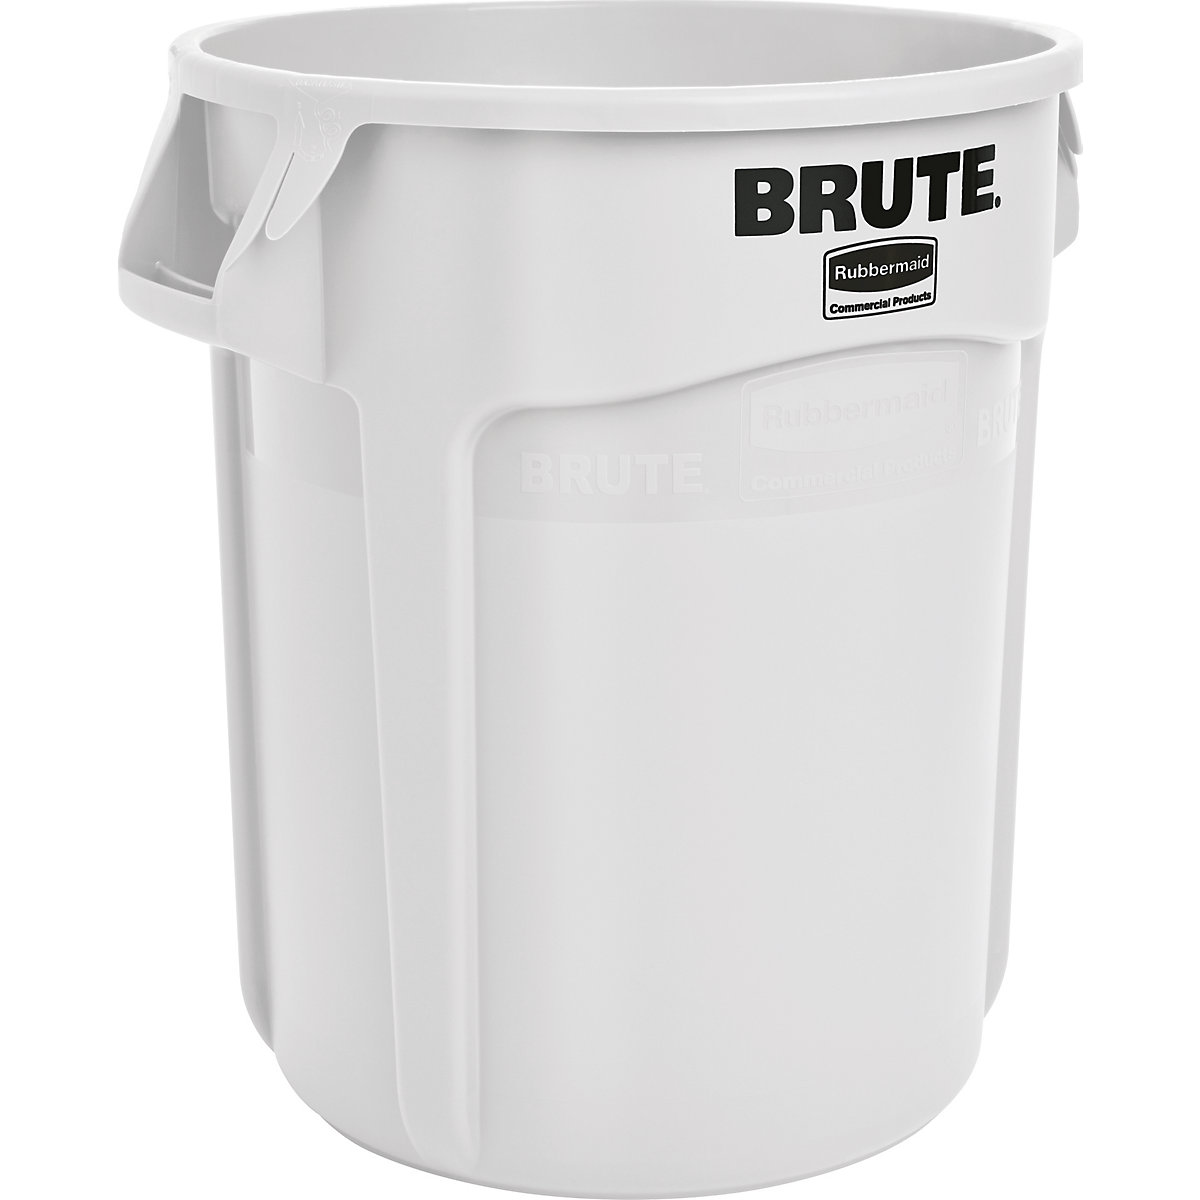 Univerzální kontejner BRUTE®, kulatý – Rubbermaid, objem 75 l, bílá-9